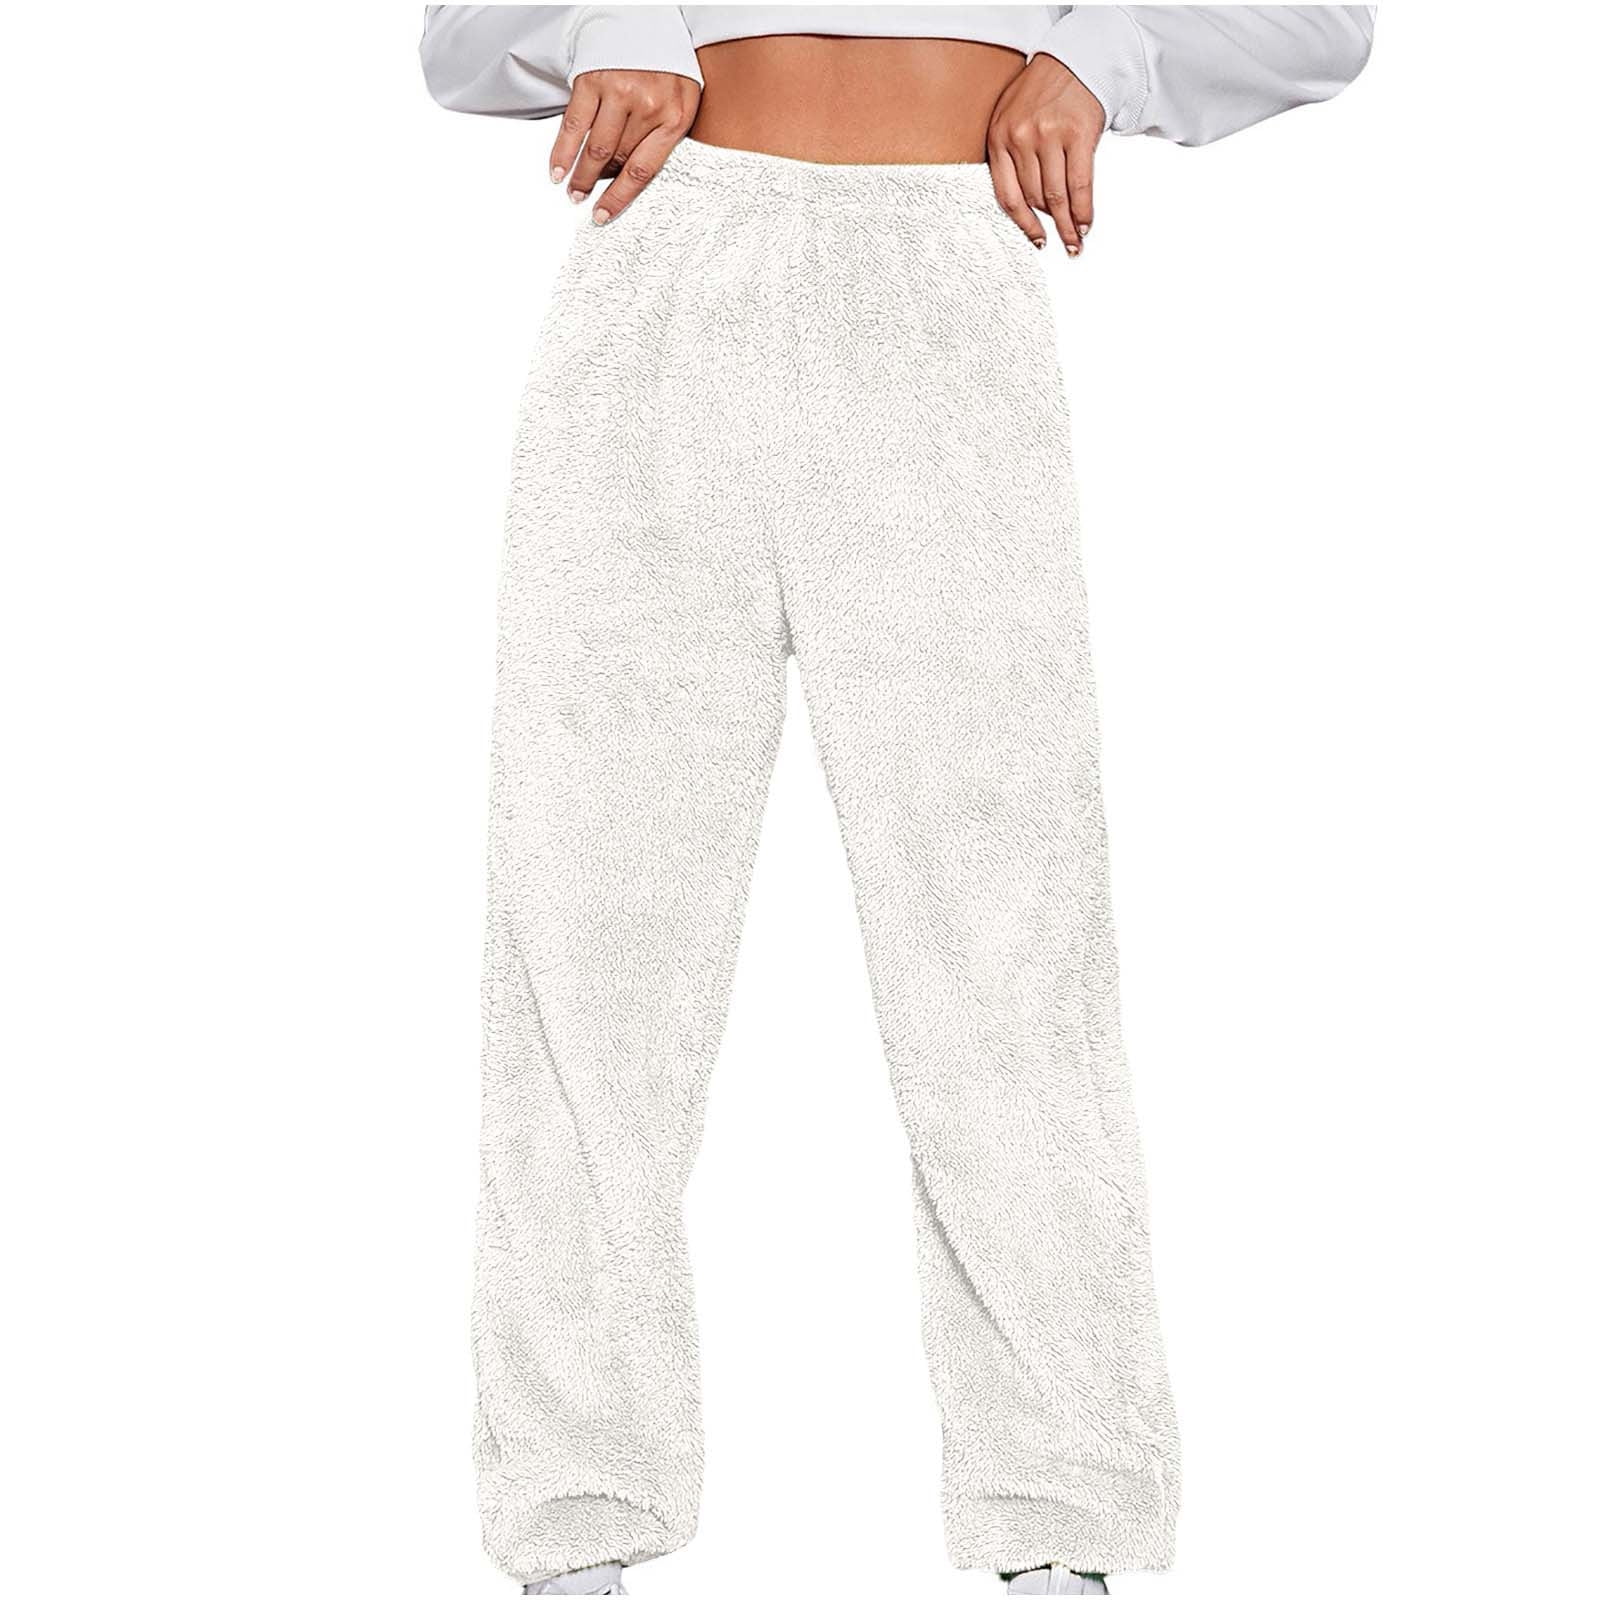 Womens Winter Fuzzy Fleece Pajama Pants Fluffy Fur Warm Cozy Plush